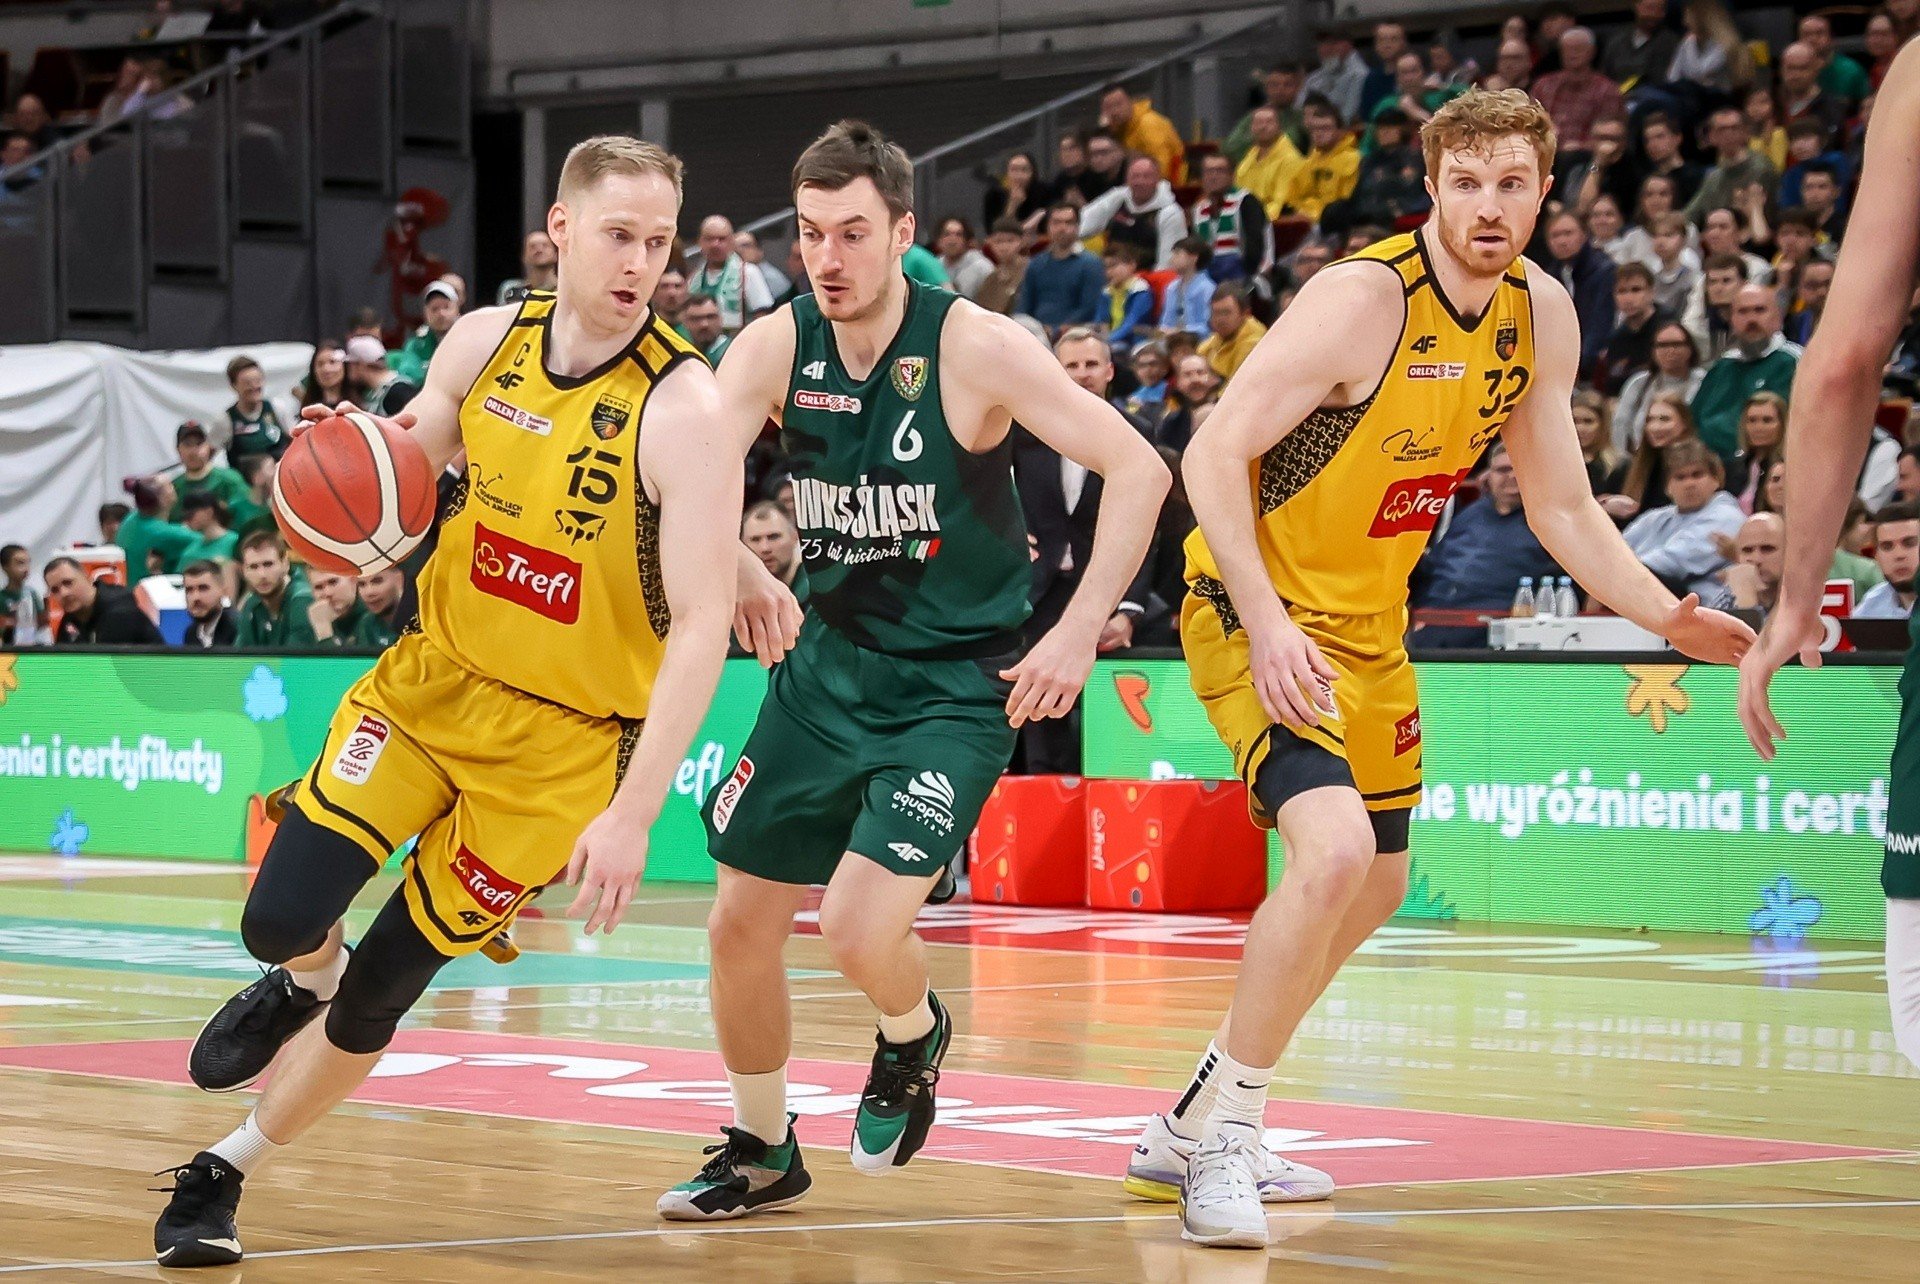 El salario de los partidos de baloncesto en Ergo Arena está aumentando. Trefl Sopot se enfrentará dos veces en las semifinales contra Śląsk Wrocław